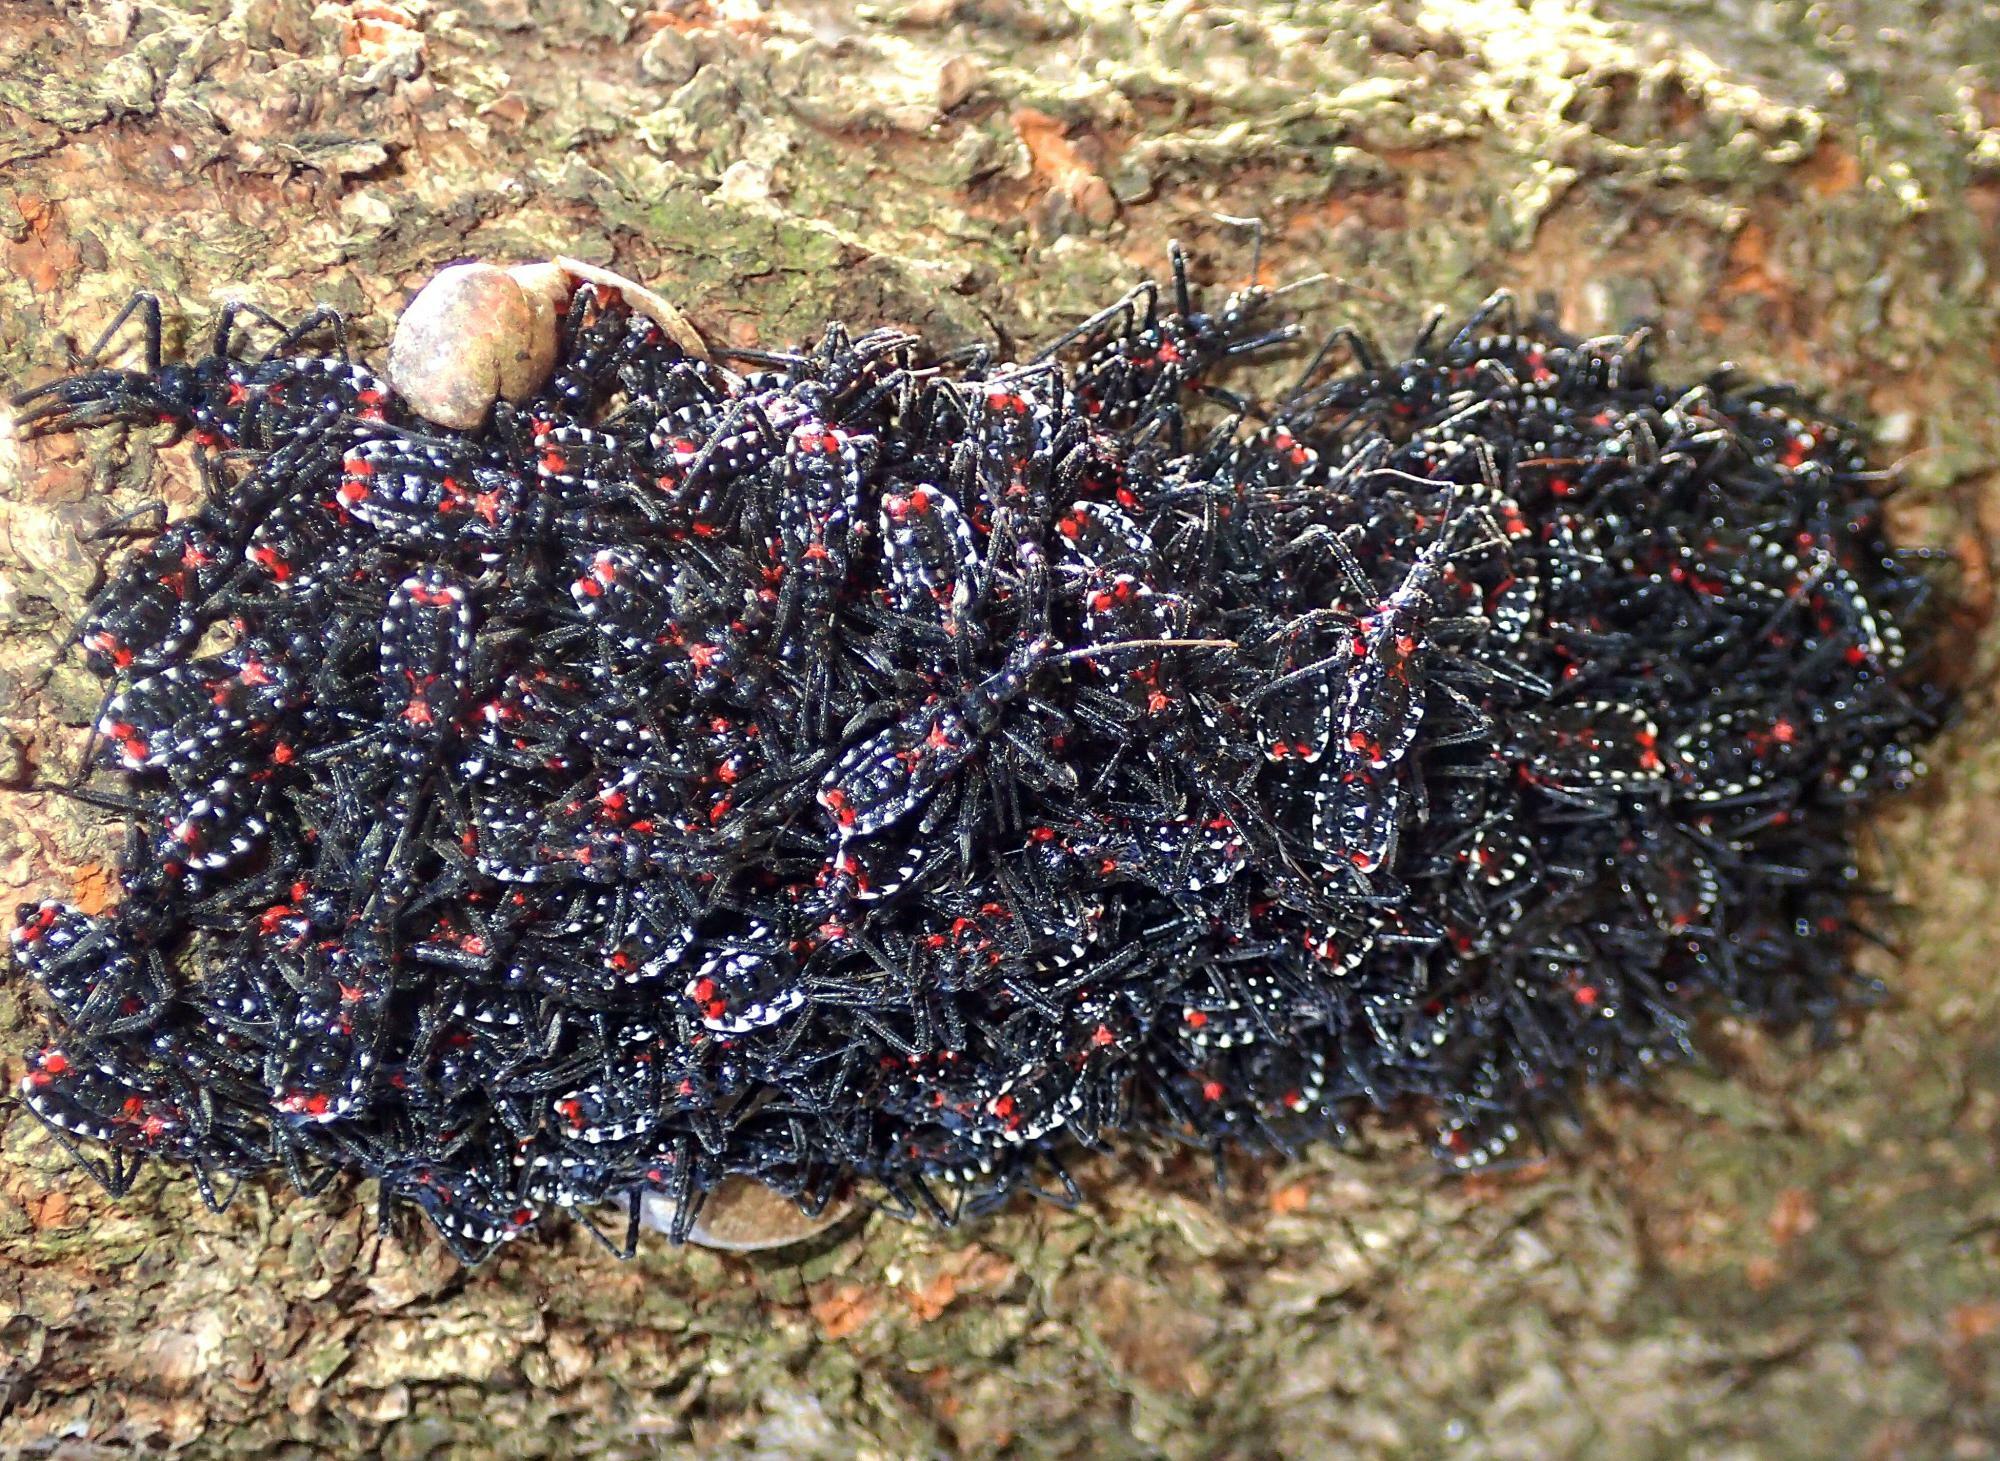 桜の幹のくぼみで集団越冬していたヨコヅナサシガメ幼虫。ゴミのかたまりのようだが、実態はカメムシのかたまりだ。